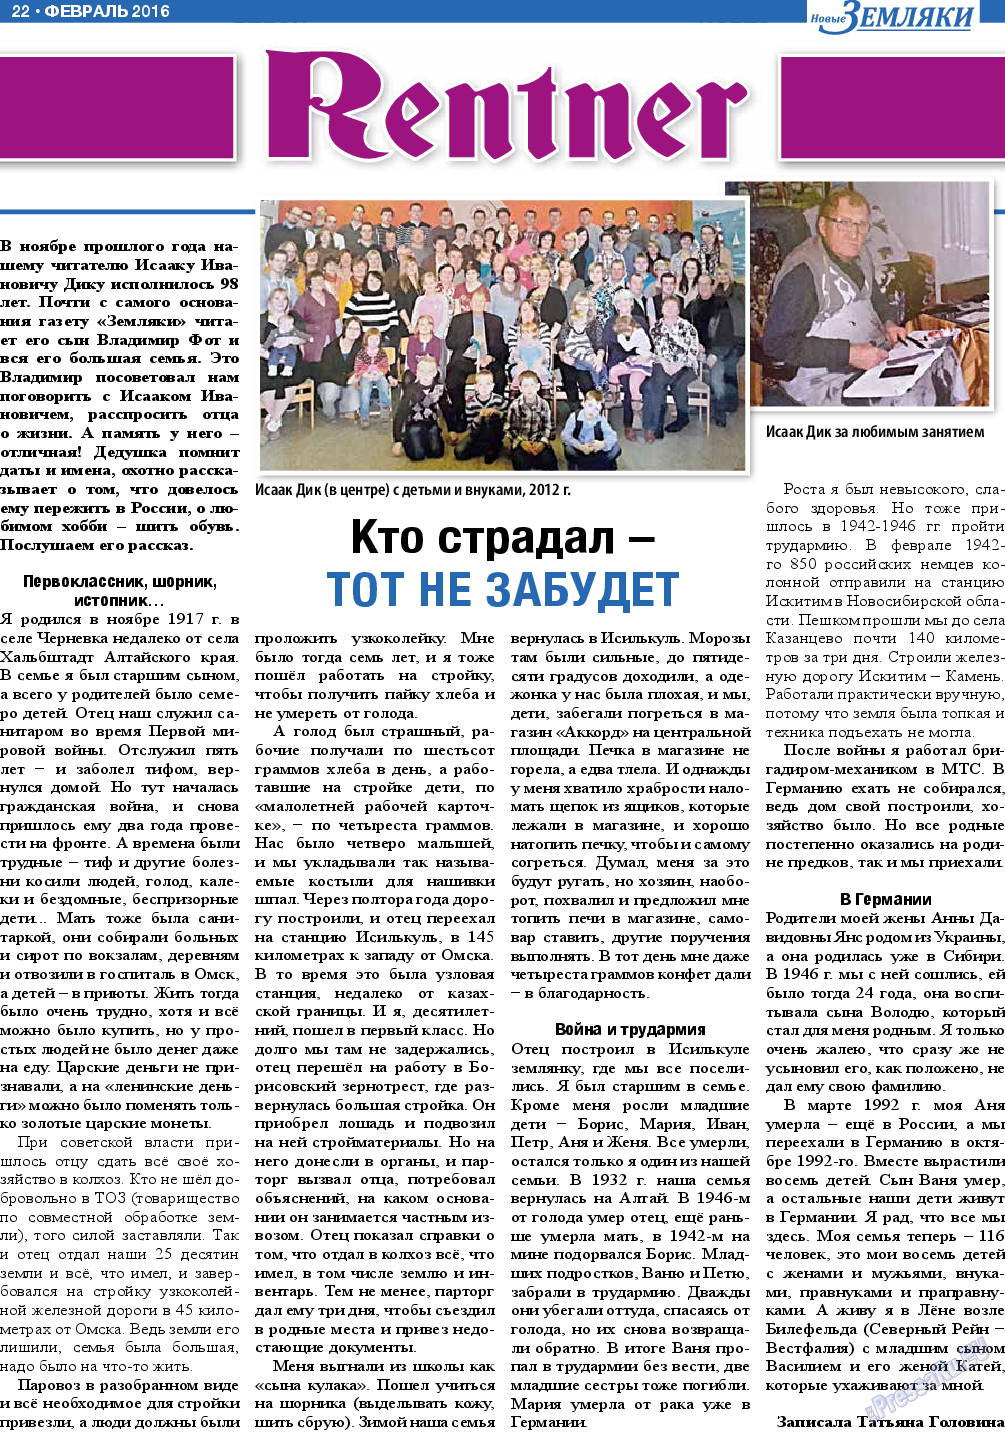 Новые Земляки, газета. 2016 №2 стр.22